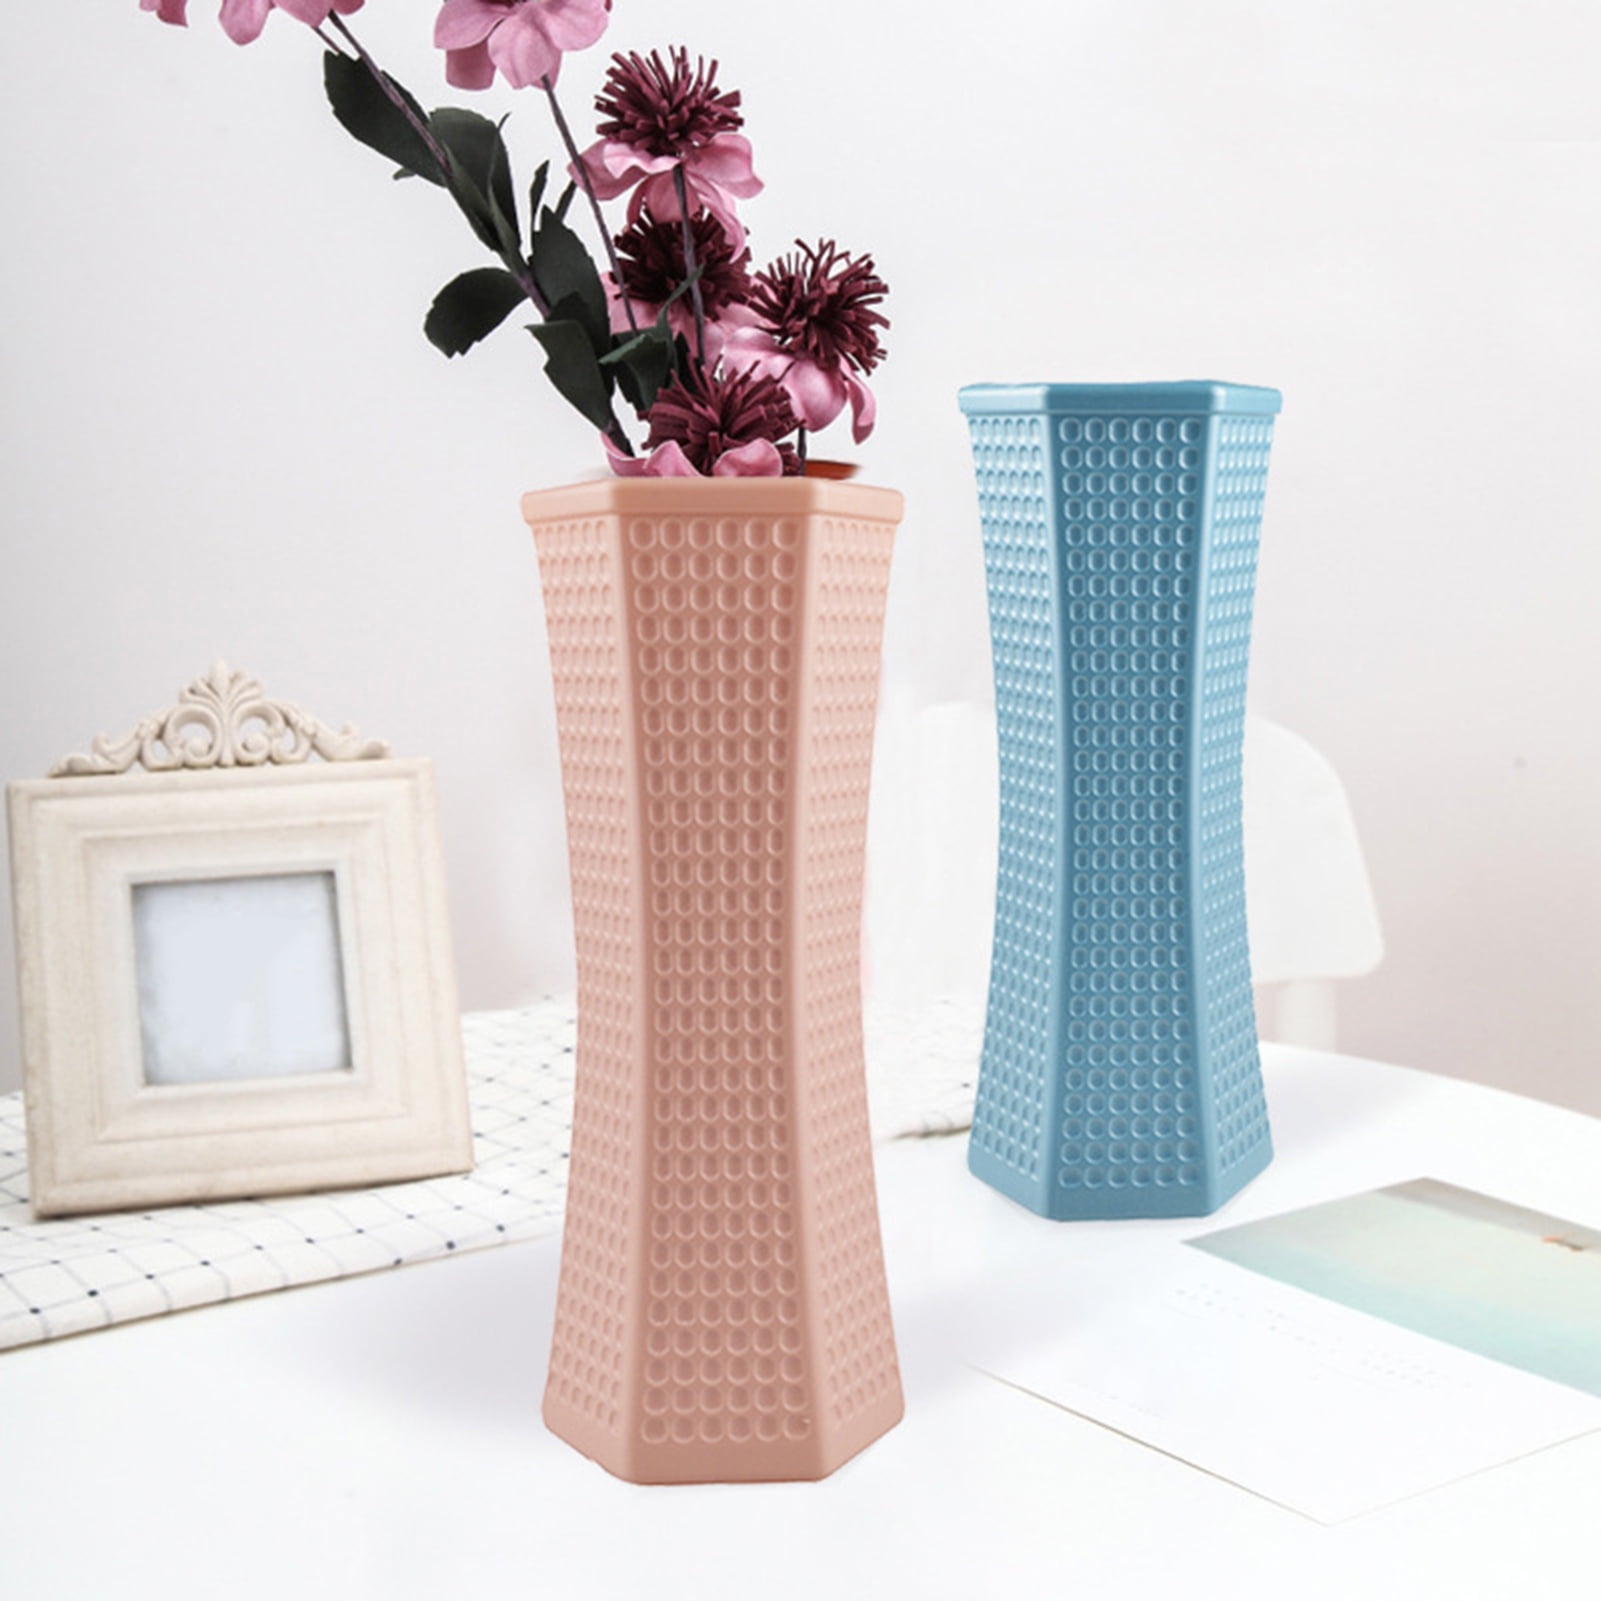 Details about   Handbag Shaped Ceramic Vase for Flowers Pot-Nordic Geometric Floral Pot-Home Dec 